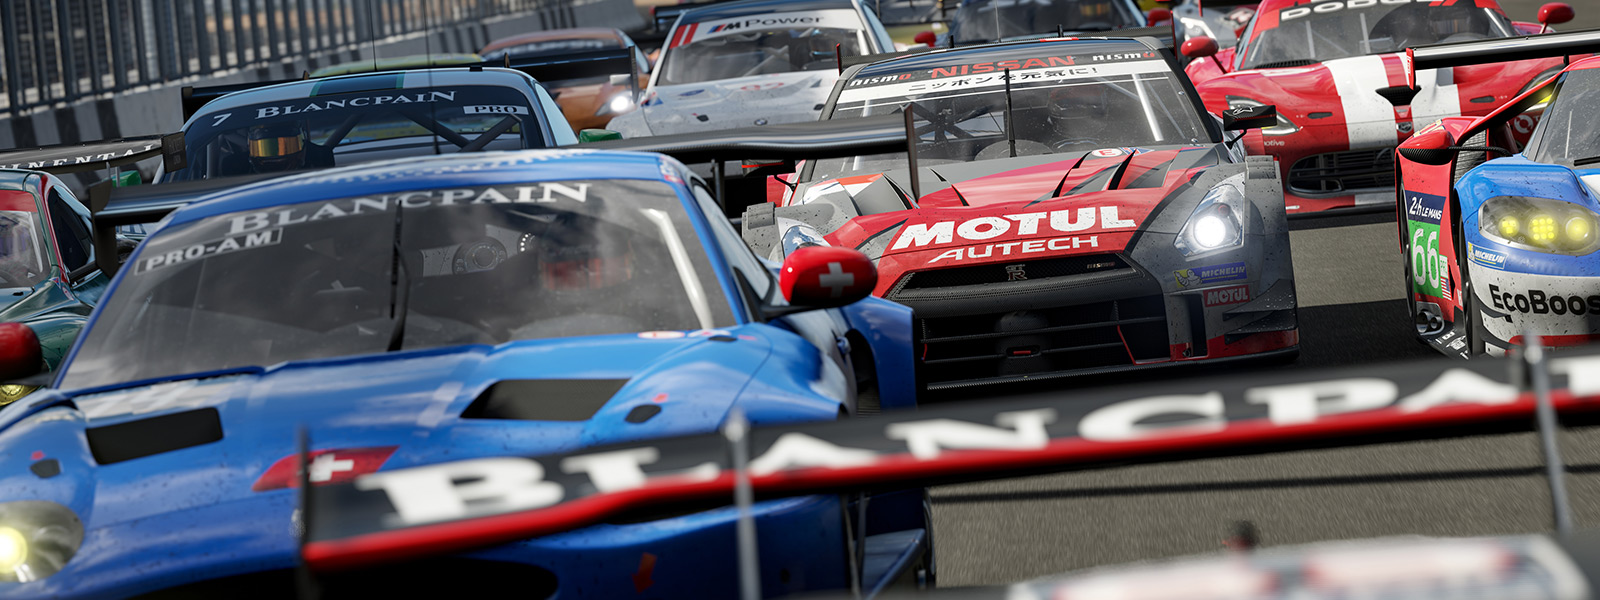 Vorderansicht der Startlinie eines Forza-Rennens aus dem Spiel Forza Motorsport 7